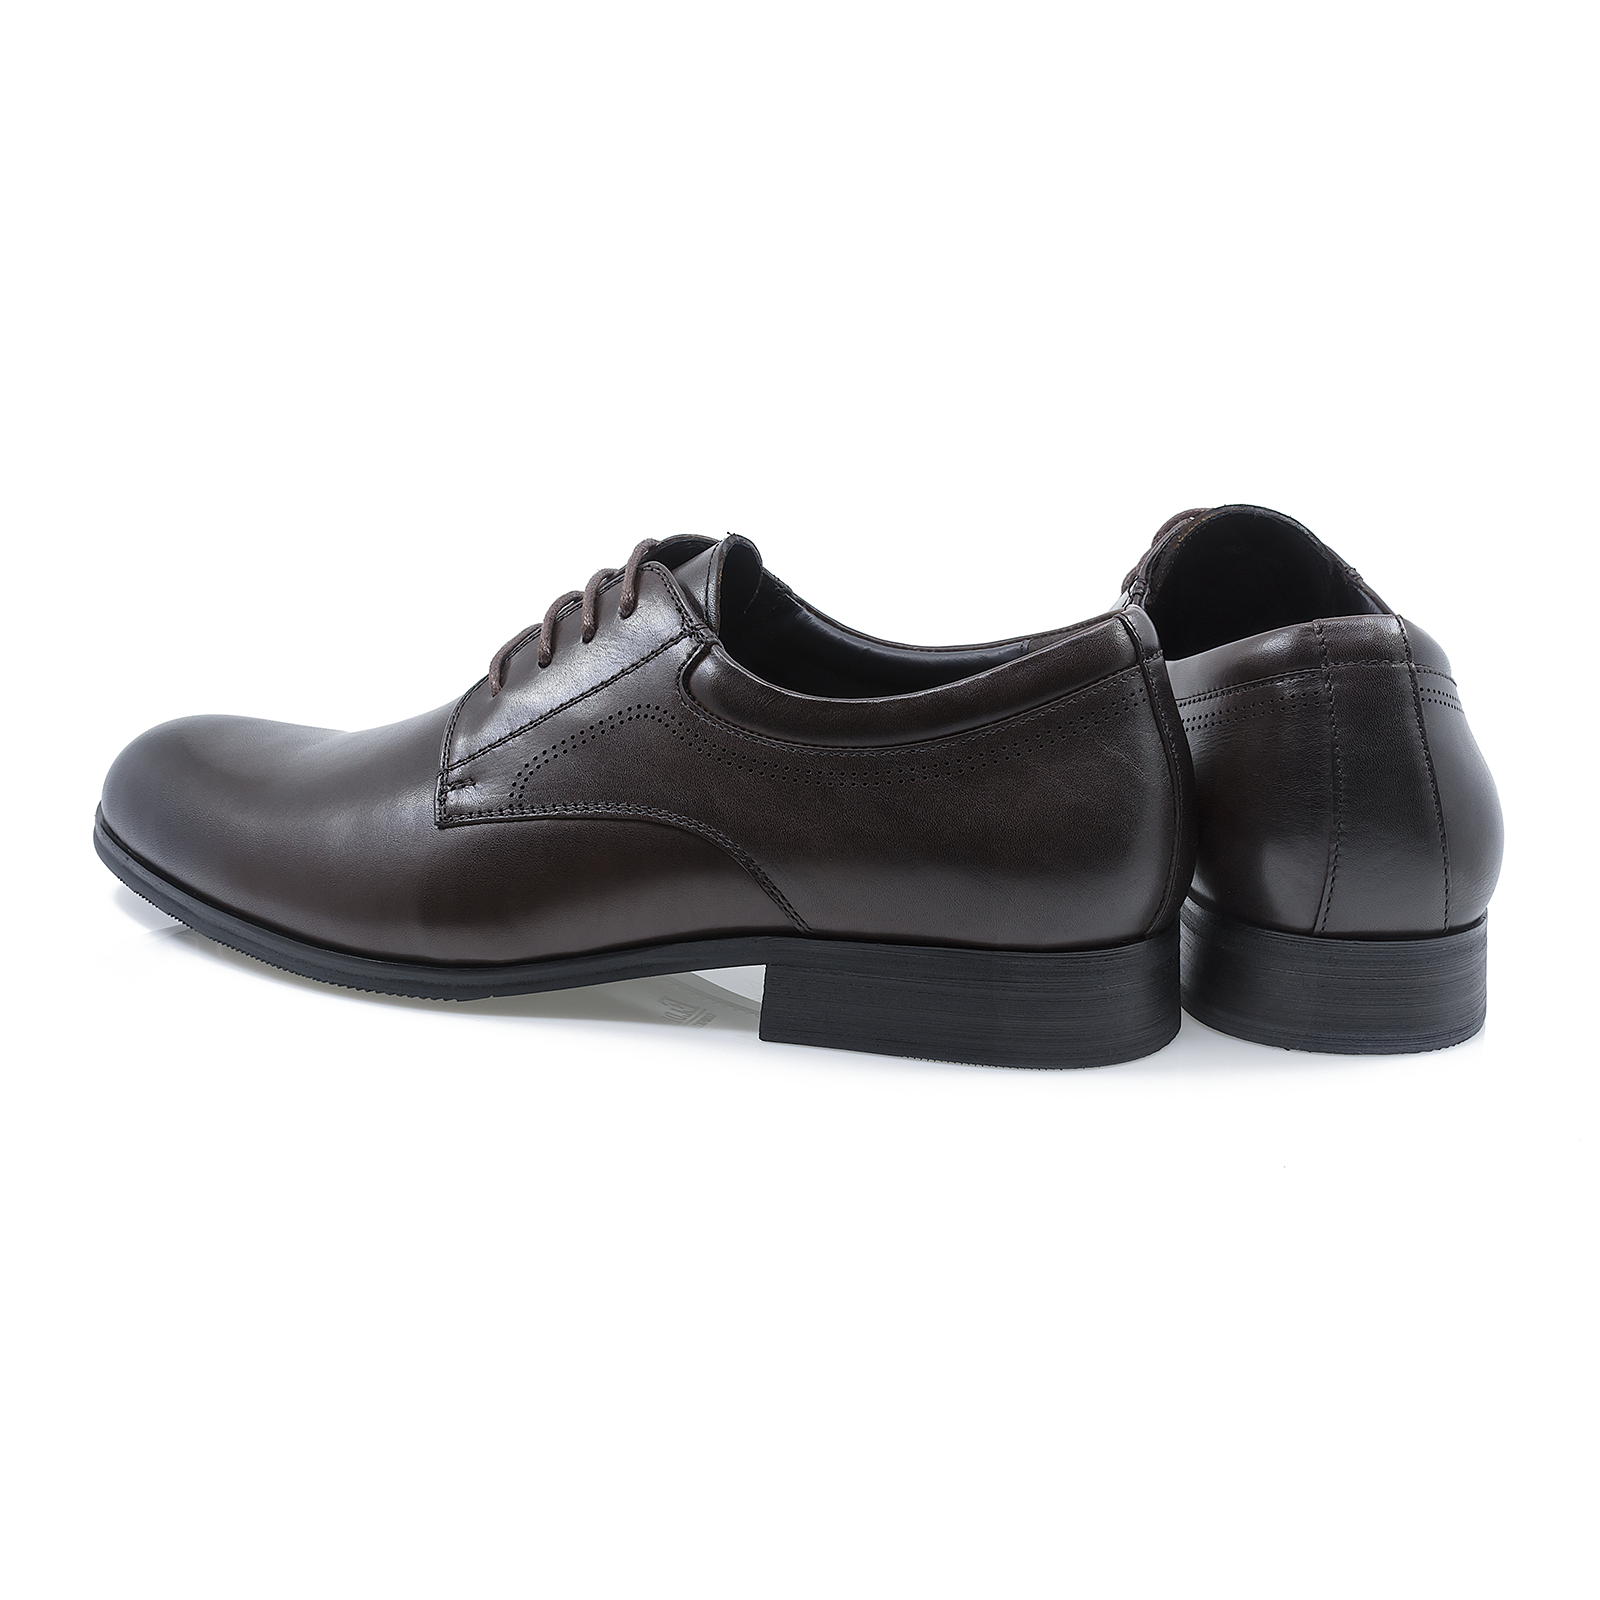 Pantofi-barbati-ELDEMAS-F4155-362-eleganti-piele-naturala-maro-nouamoda.ro-5